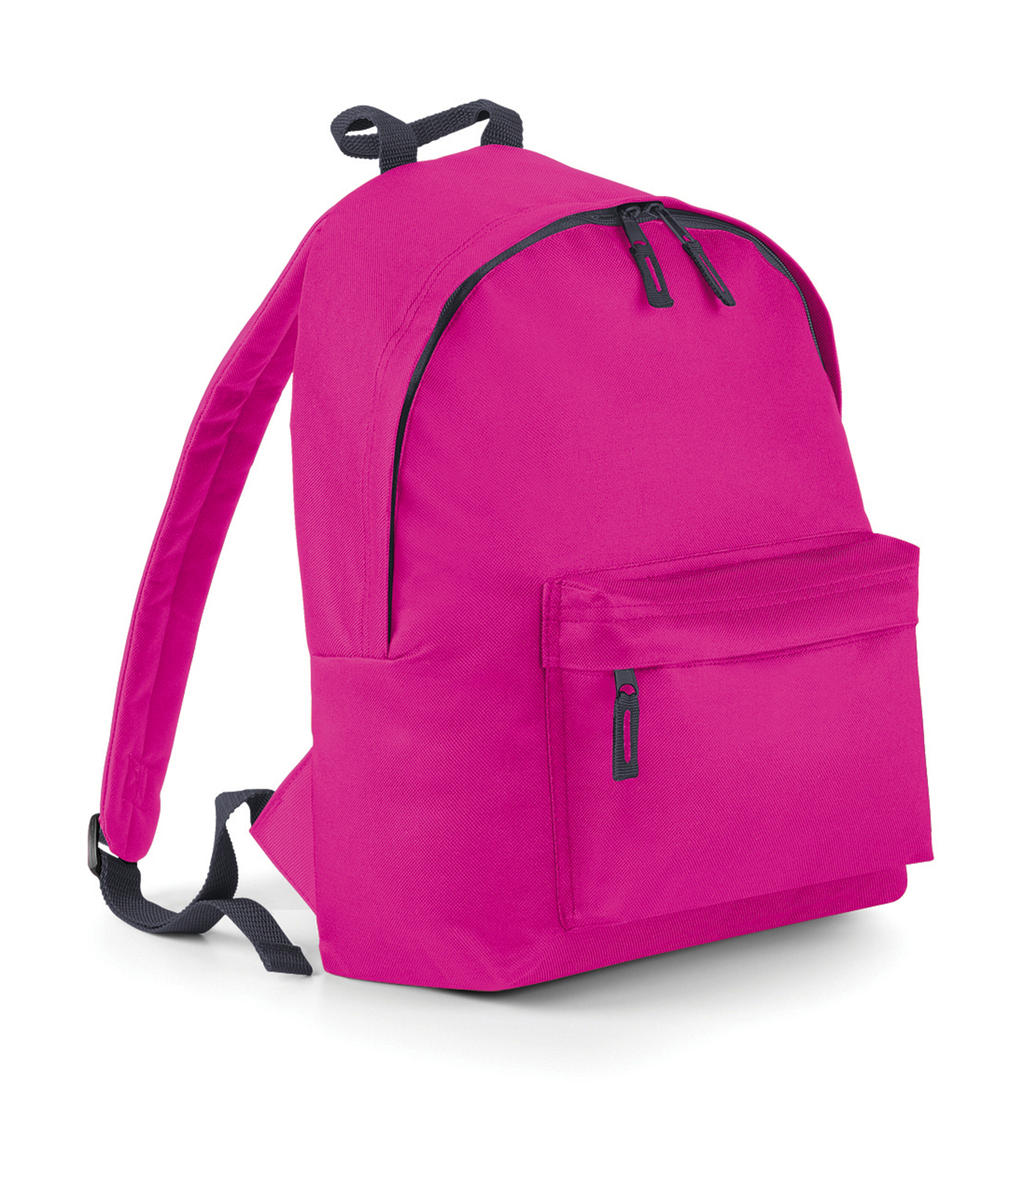  Junior Fashion Backpack in Farbe Fuchsia/Graphite Grey